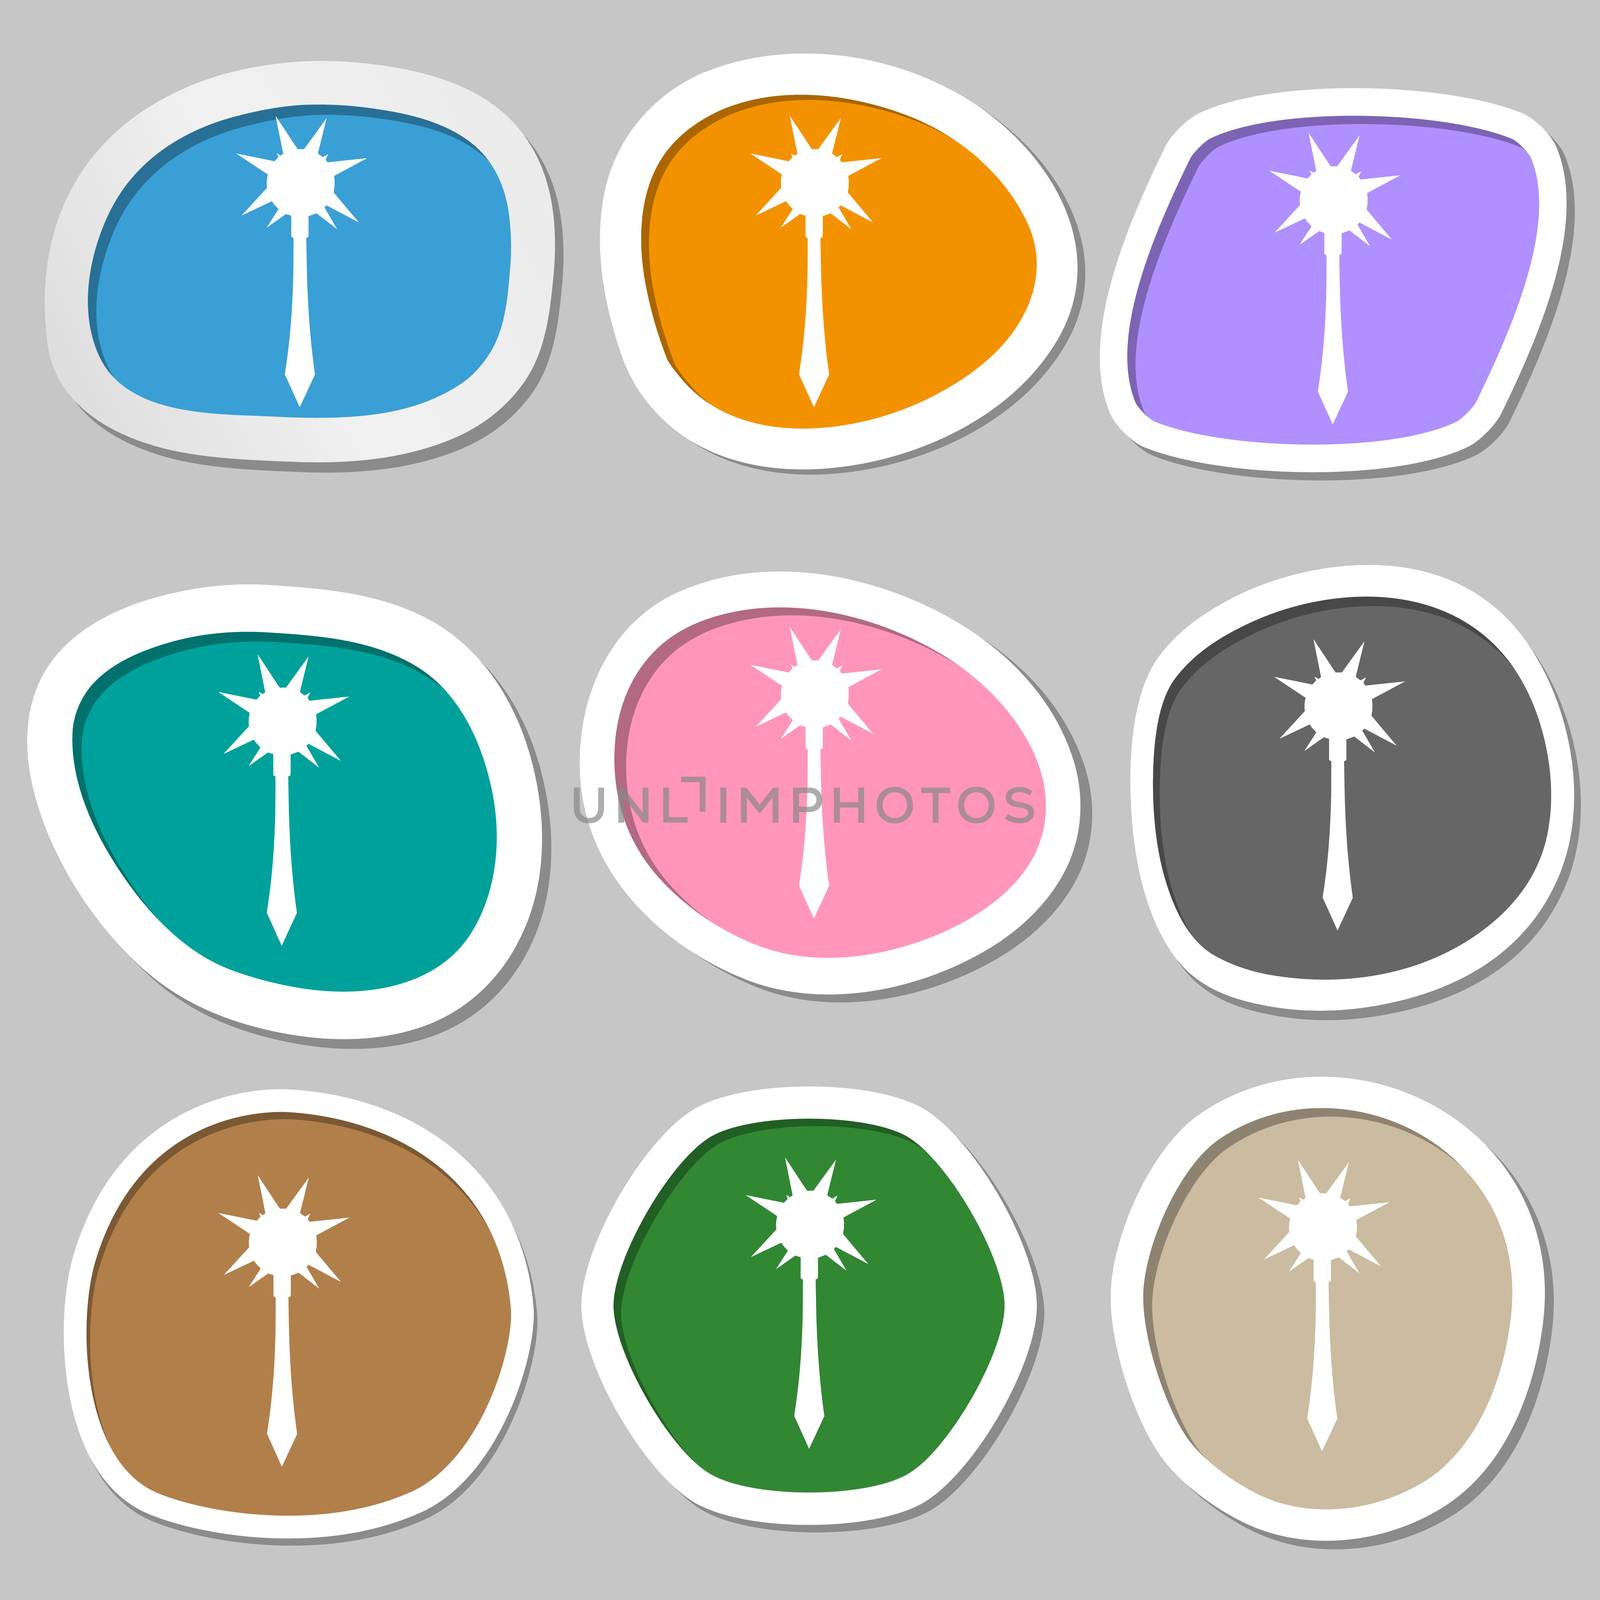 Mace icon symbols. Multicolored paper stickers. illustration